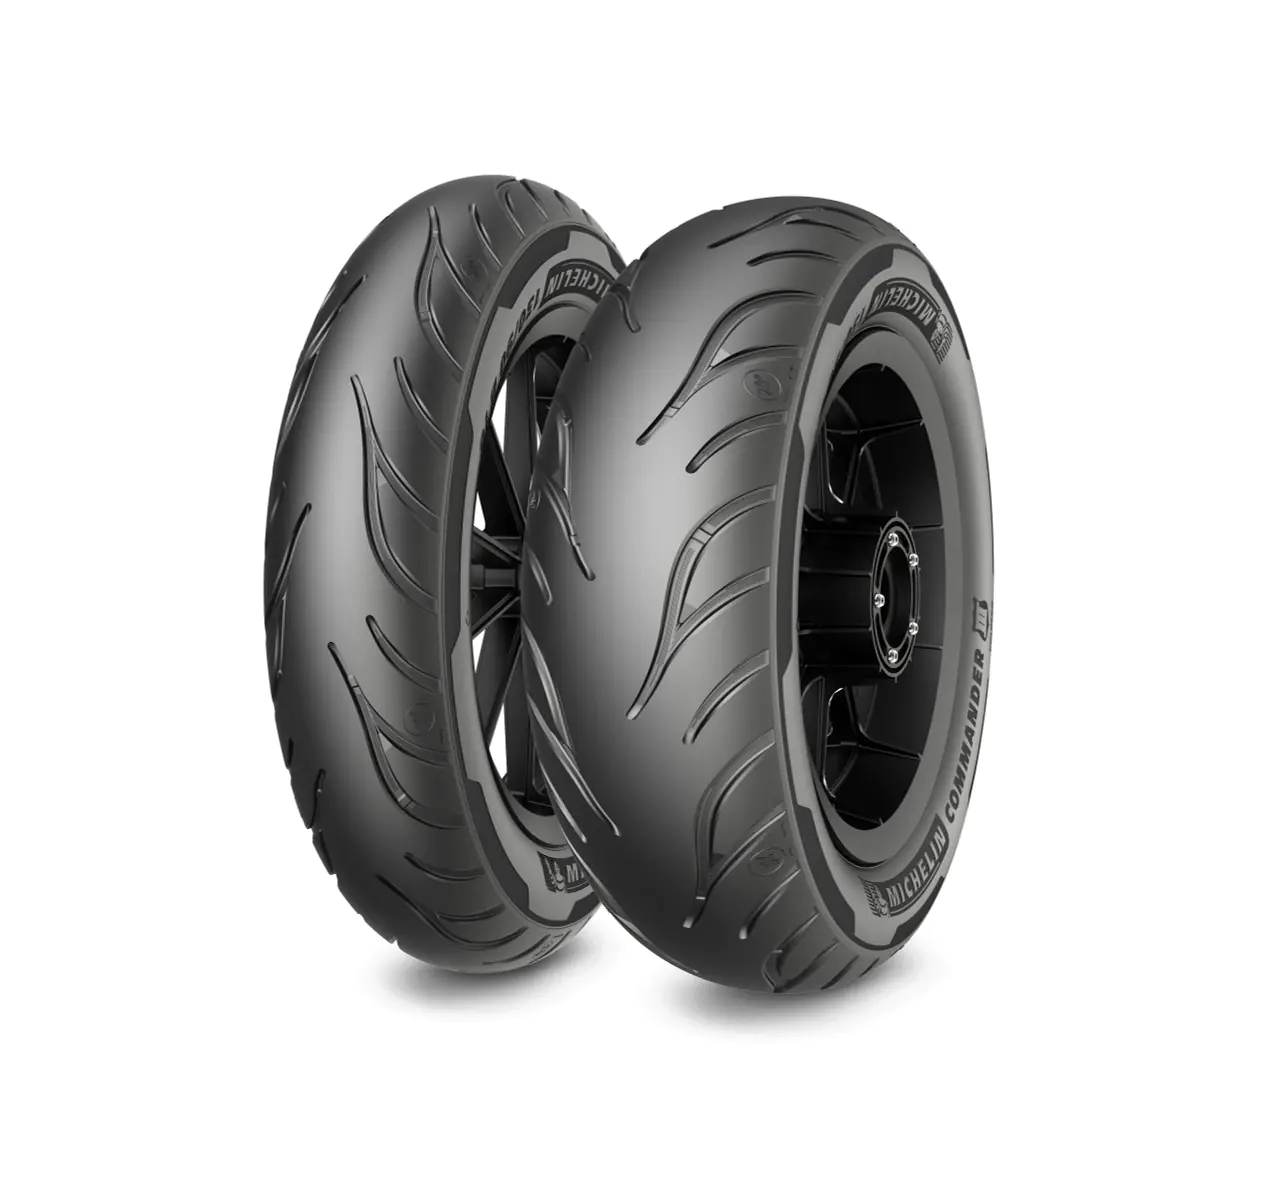 Michelin Michelin 140/75 R17 67V COMMANDER III CRUISER pneumatici nuovi Estivo 